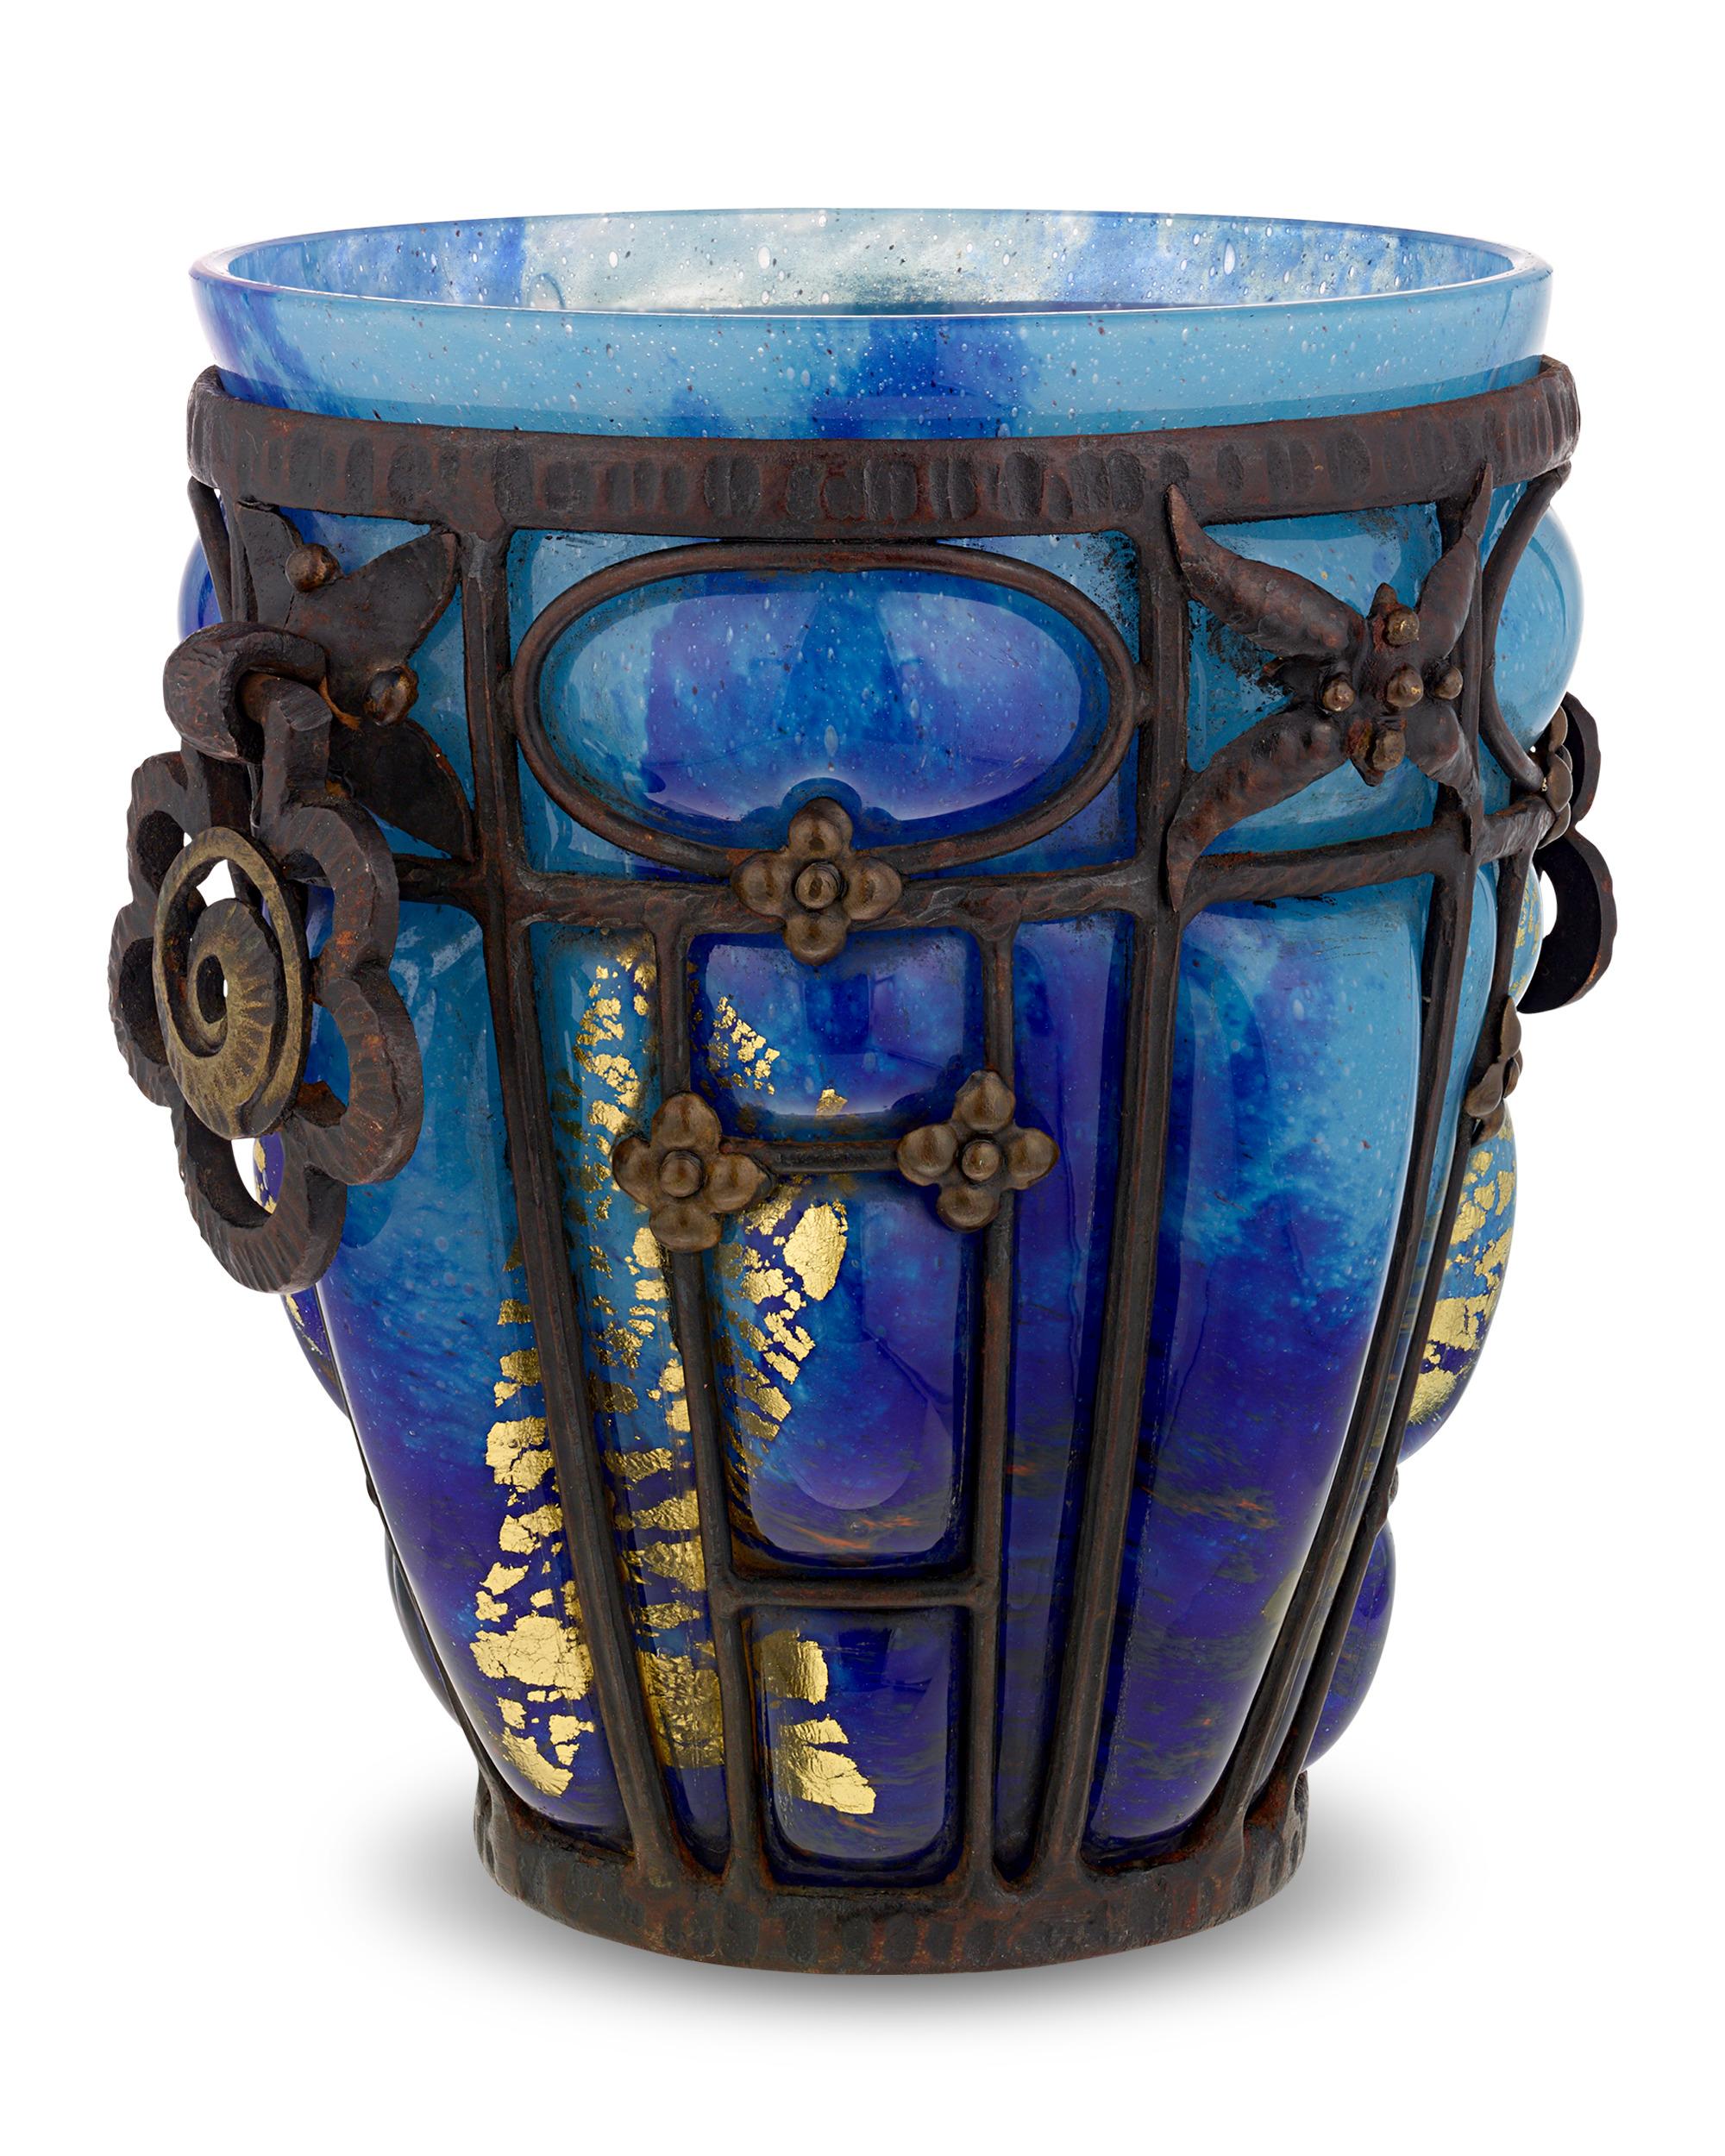 Ce vase exquis en verre et en fer forgé est le résultat de l'une des plus emblématiques collaborations artistiques de l'Art déco entre Daum Nancy et Louis Majorelle. Réputés pour leur savoir-faire inégalé et leur esthétique unique, Daum et Majorelle